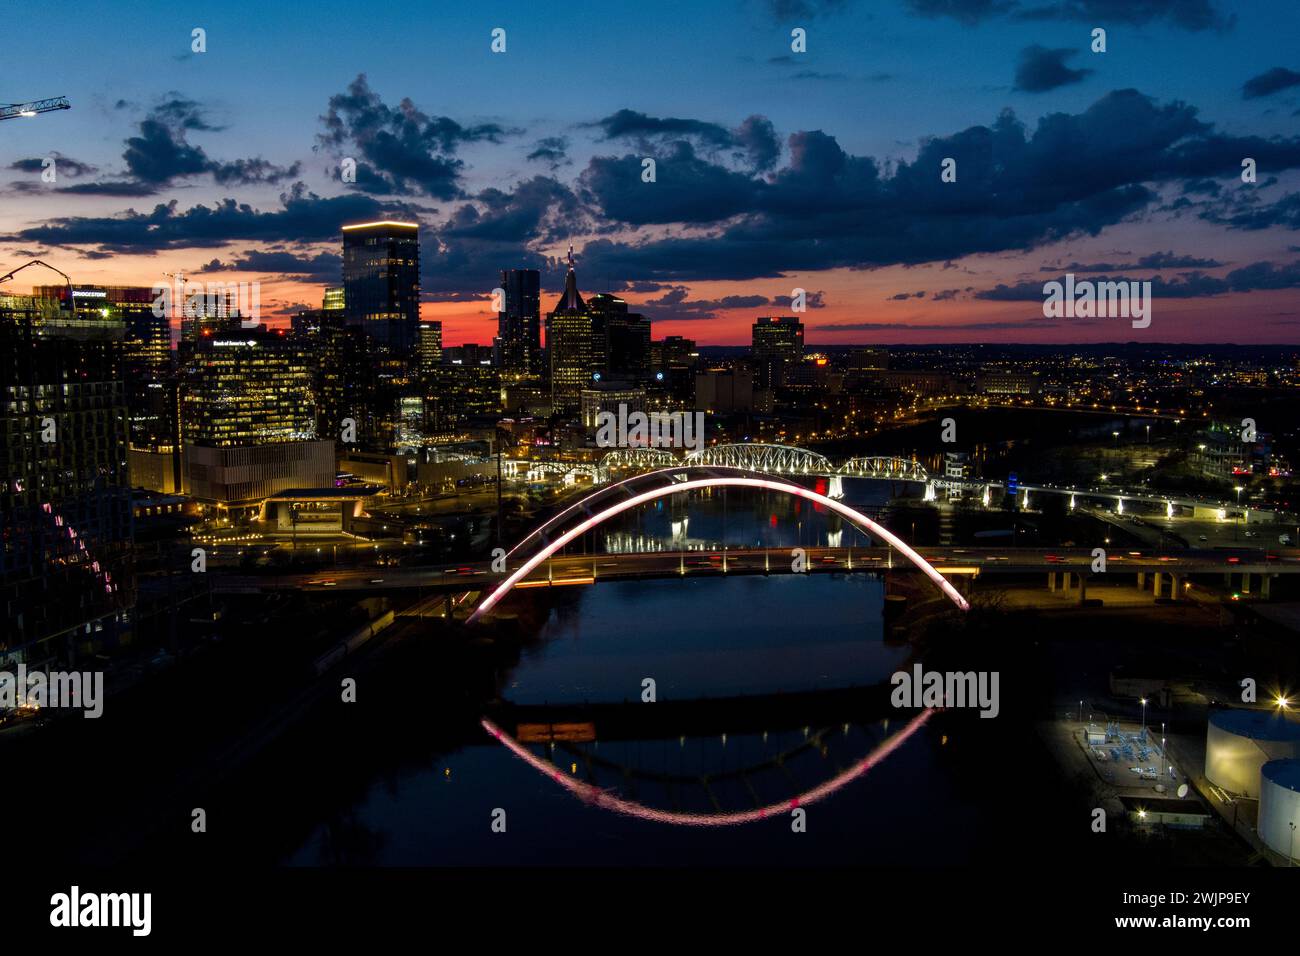 Nashville Skyline at Night Stock Photo